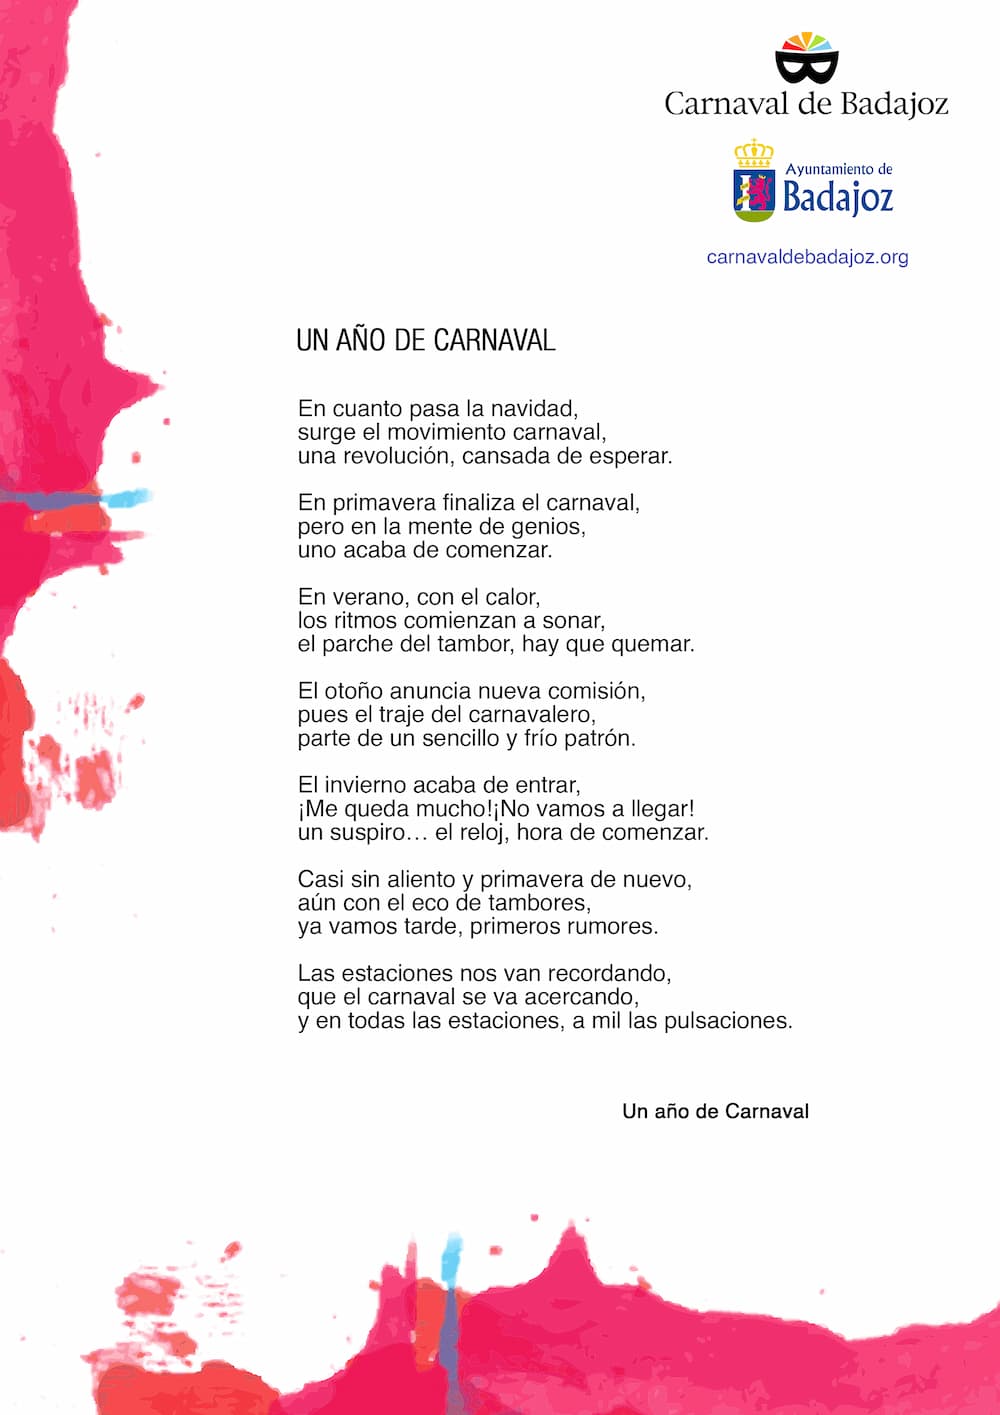 Participantes en el Concurso de poesía y fotografía del 40 Aniversario del Carnaval de Badajoz